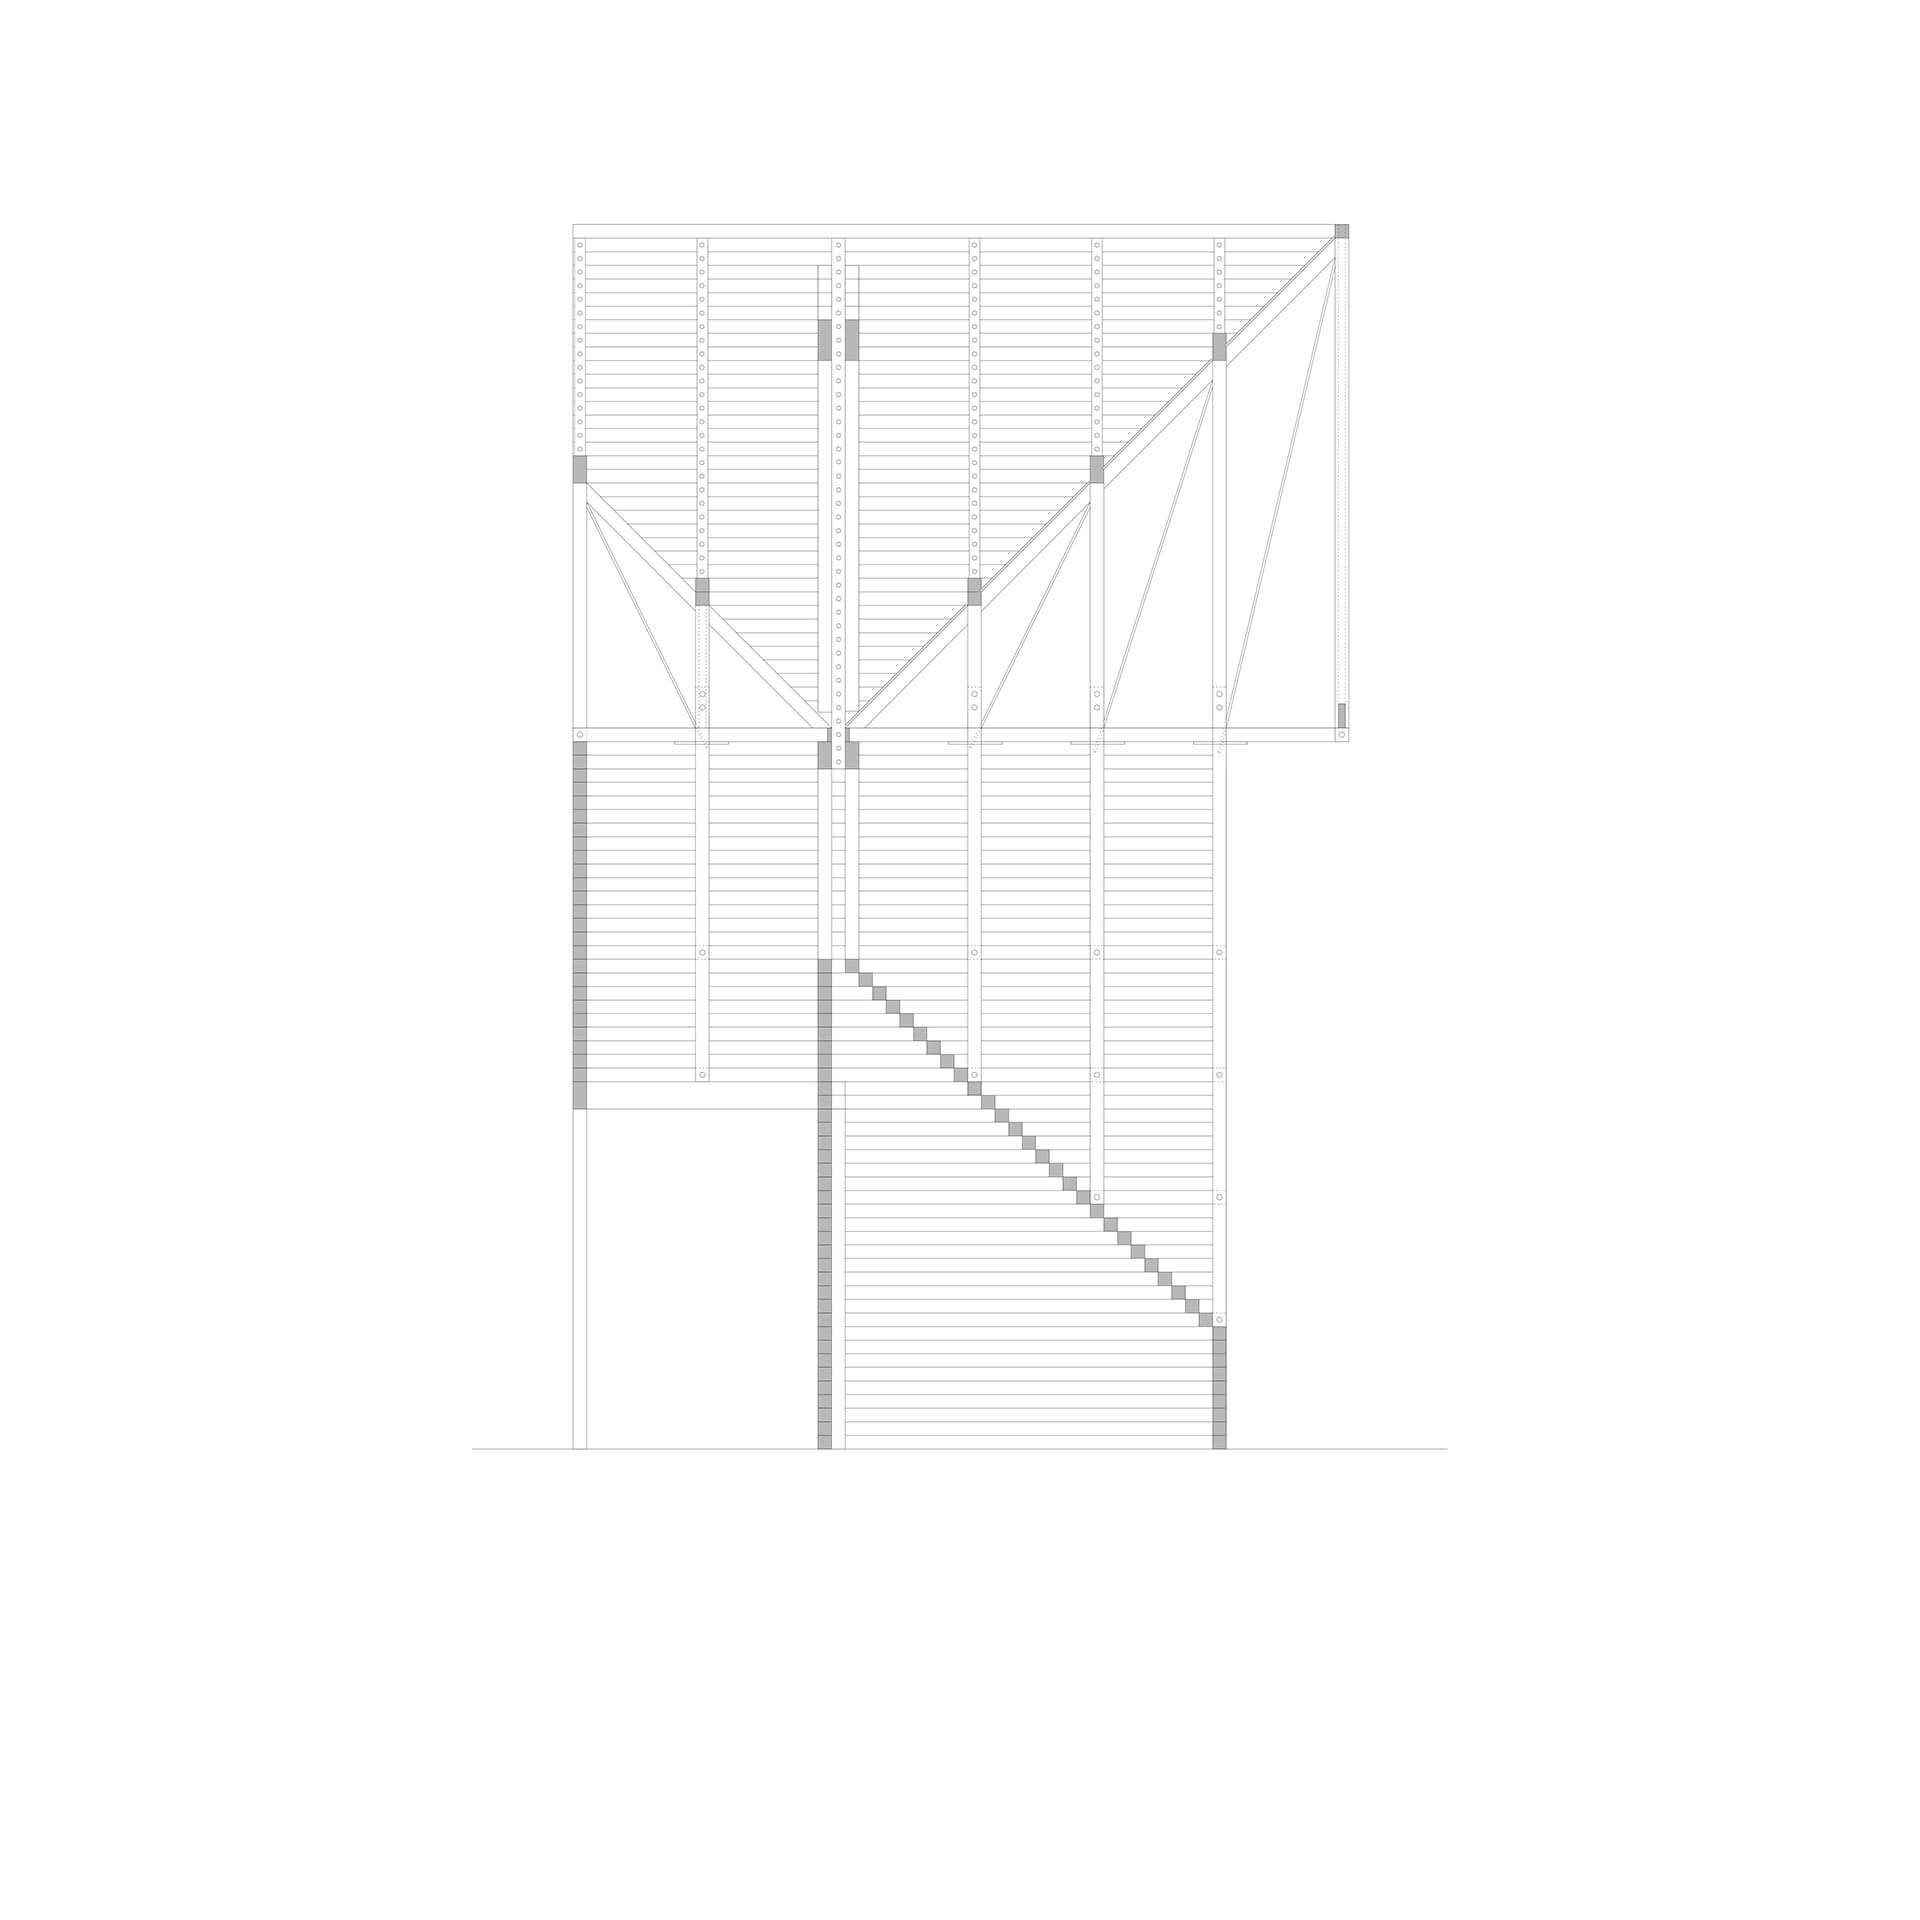 Steve Larkin Architects - Venice 2. Section